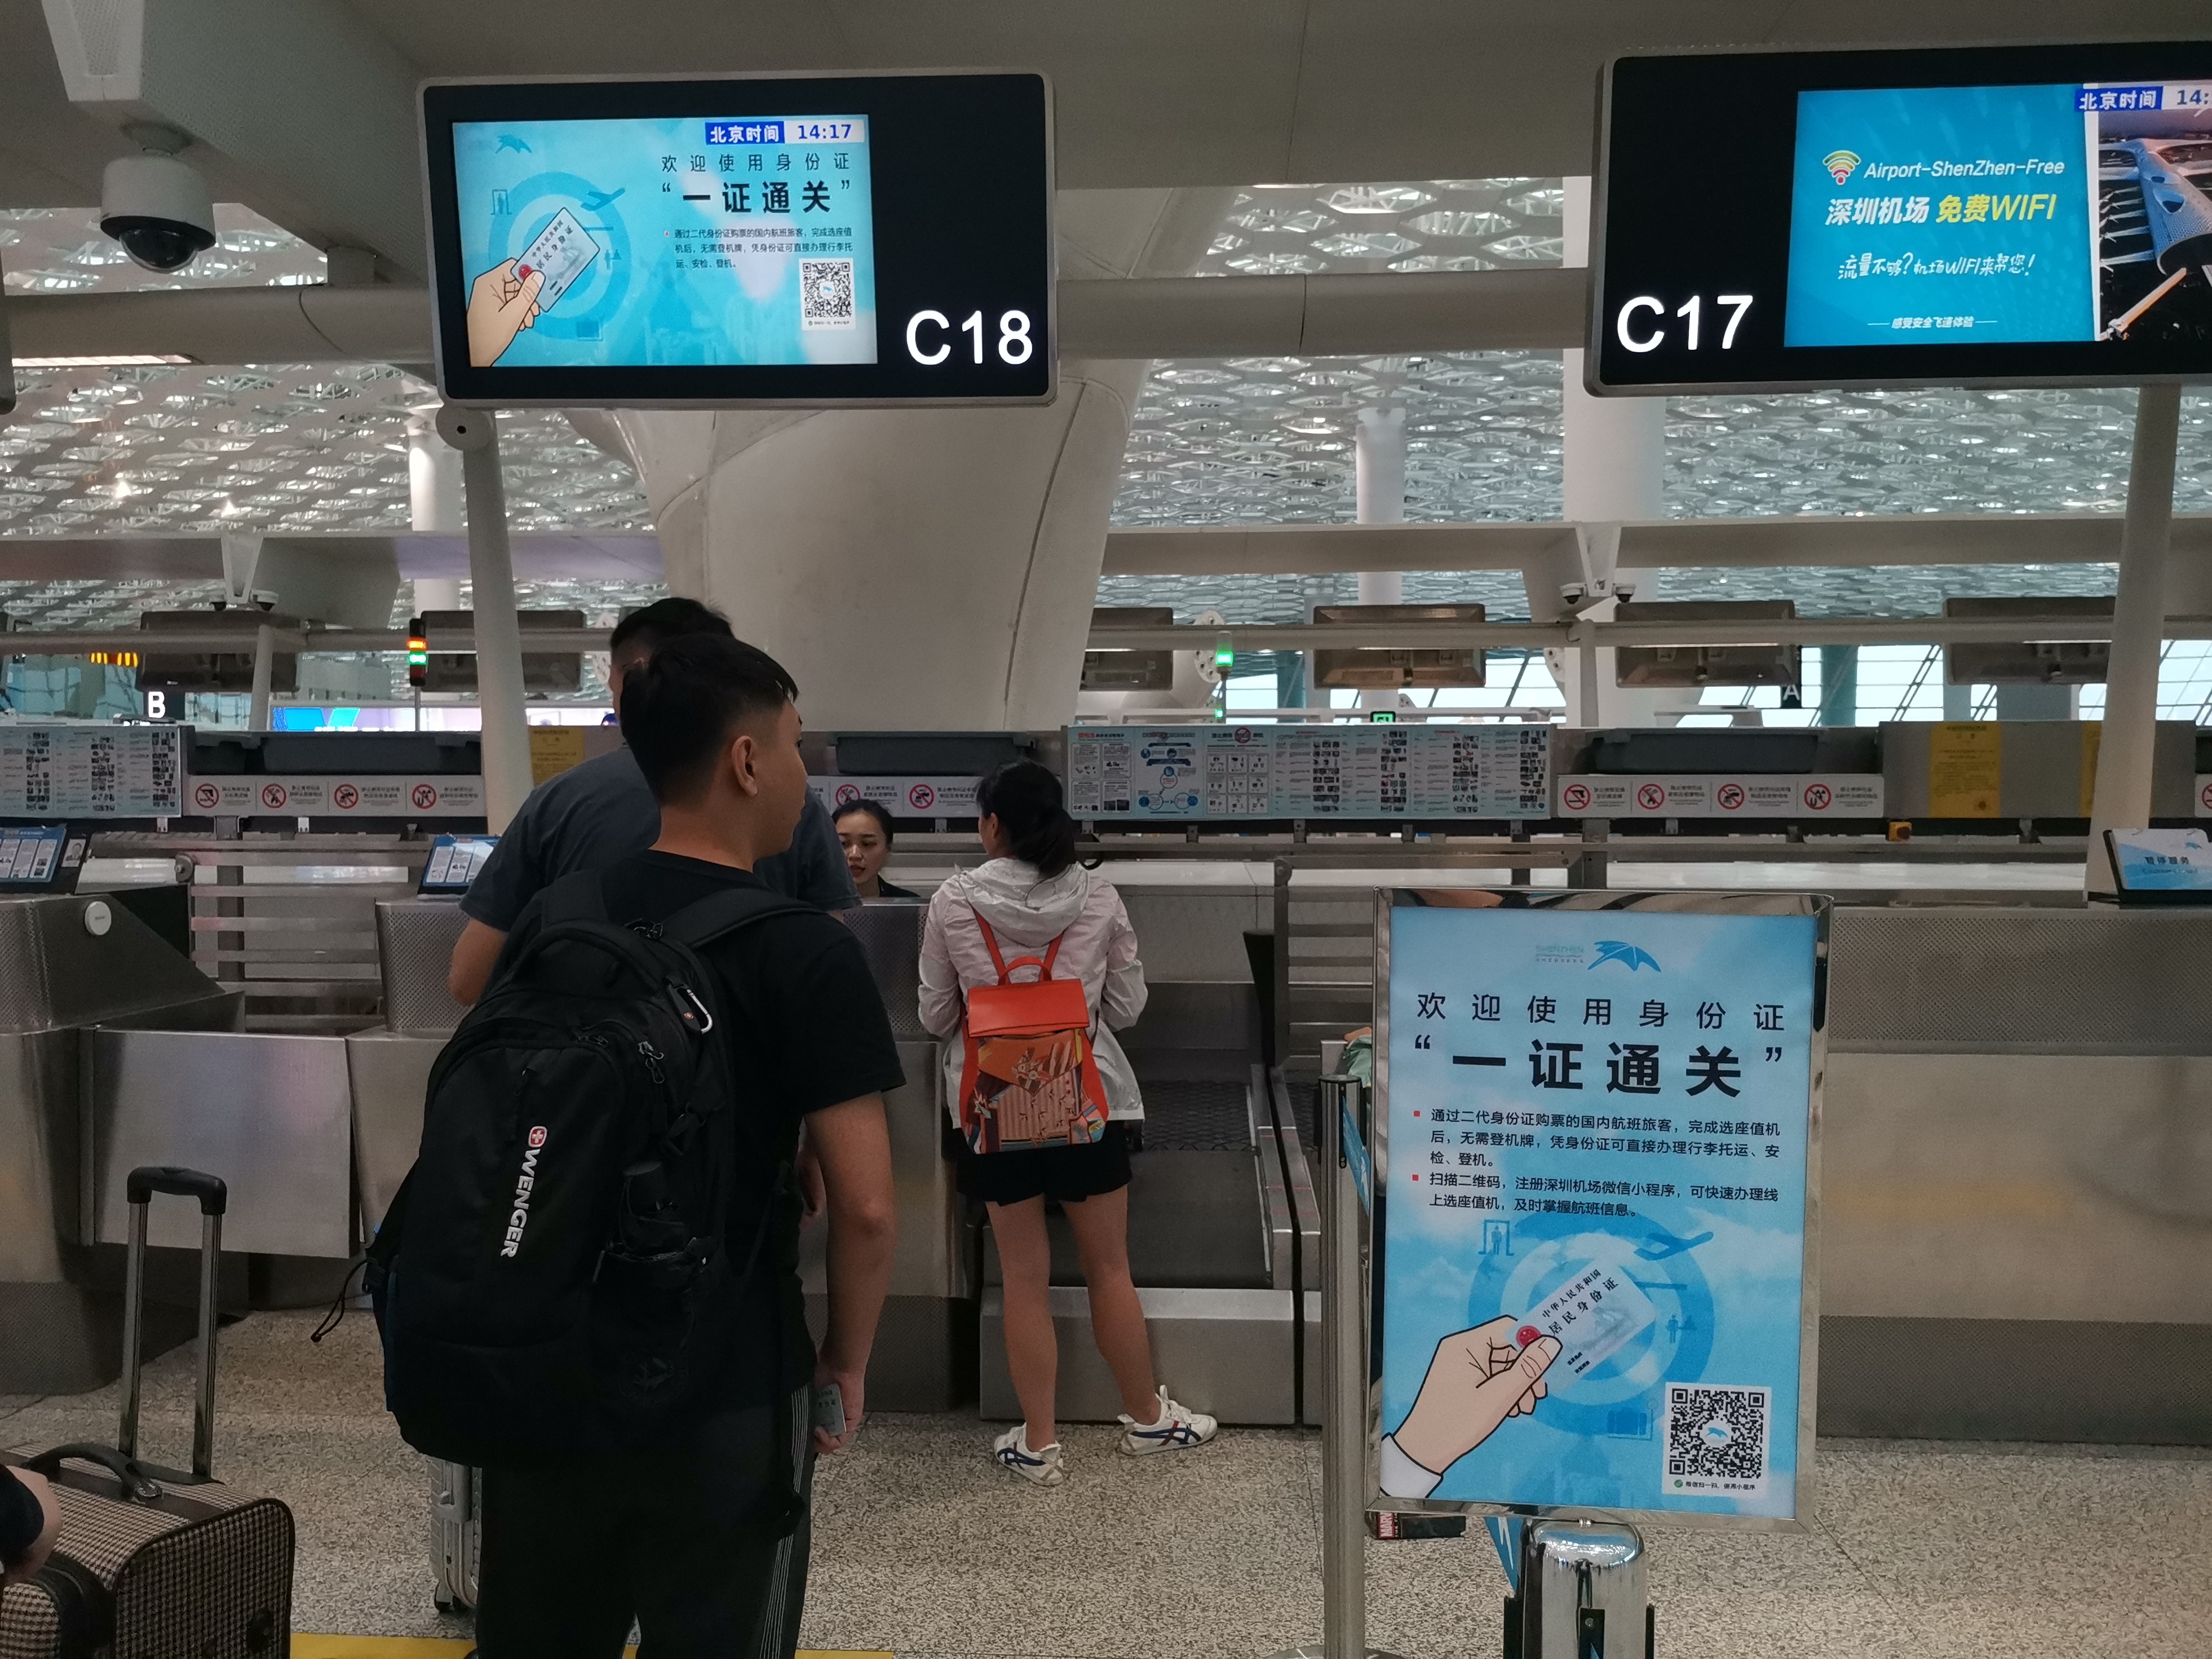 即日起A深圳機場全面試行國內航班身份證u一證通關v服務